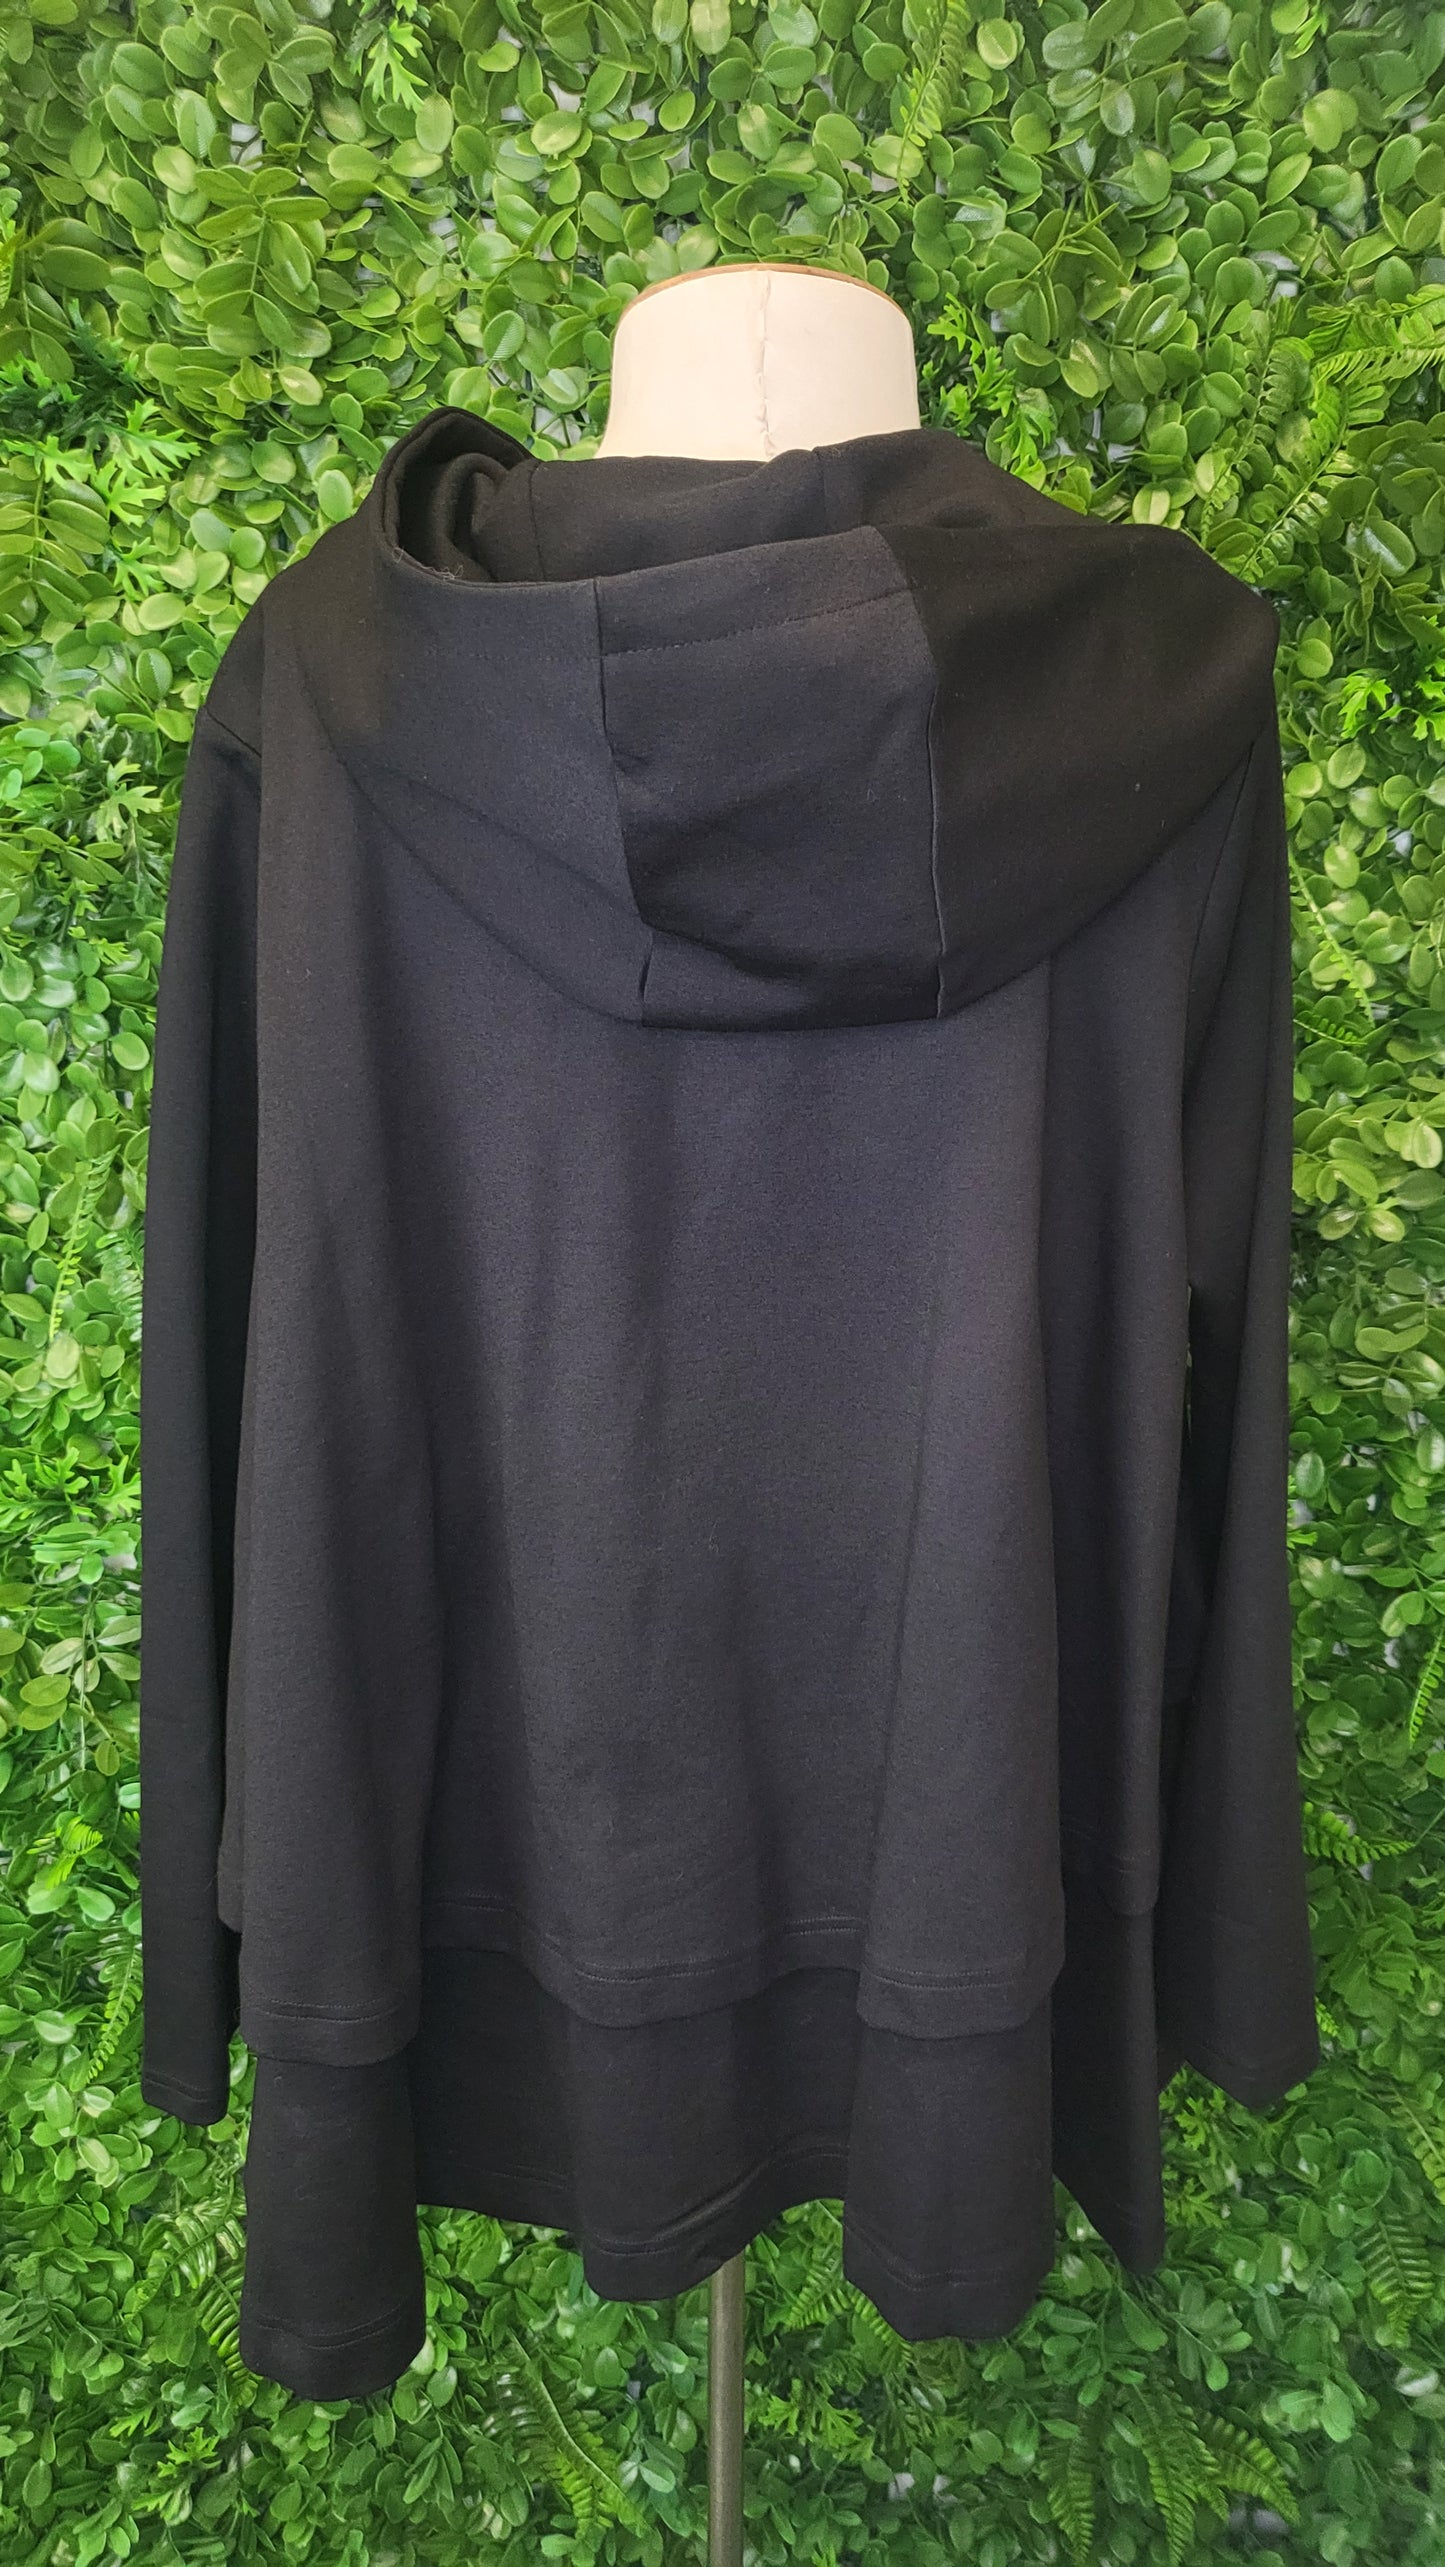 ANTLER NZ Black Hooded Jacket (14)